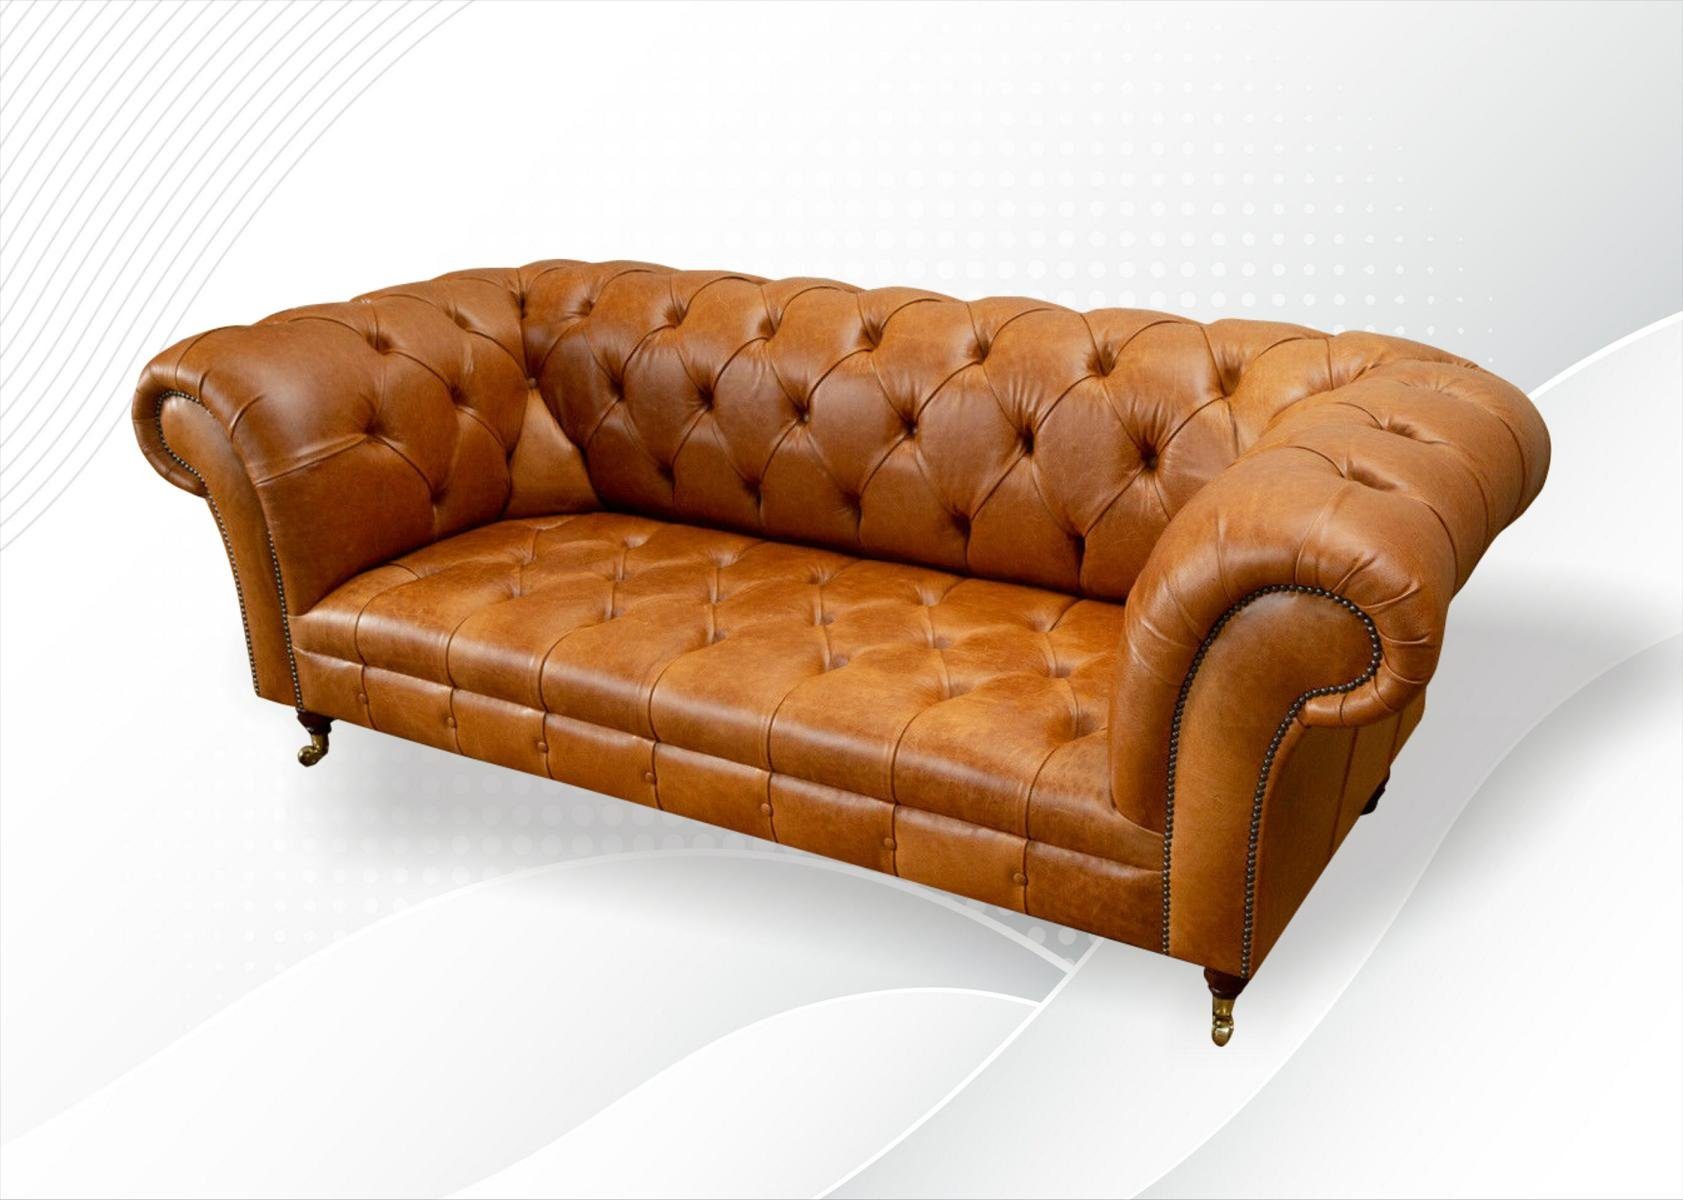 JVmoebel Luxus Dreisitzer Chesterfield Made Design, Brauner Neu Couch Europe Chesterfield-Sofa 3-er in